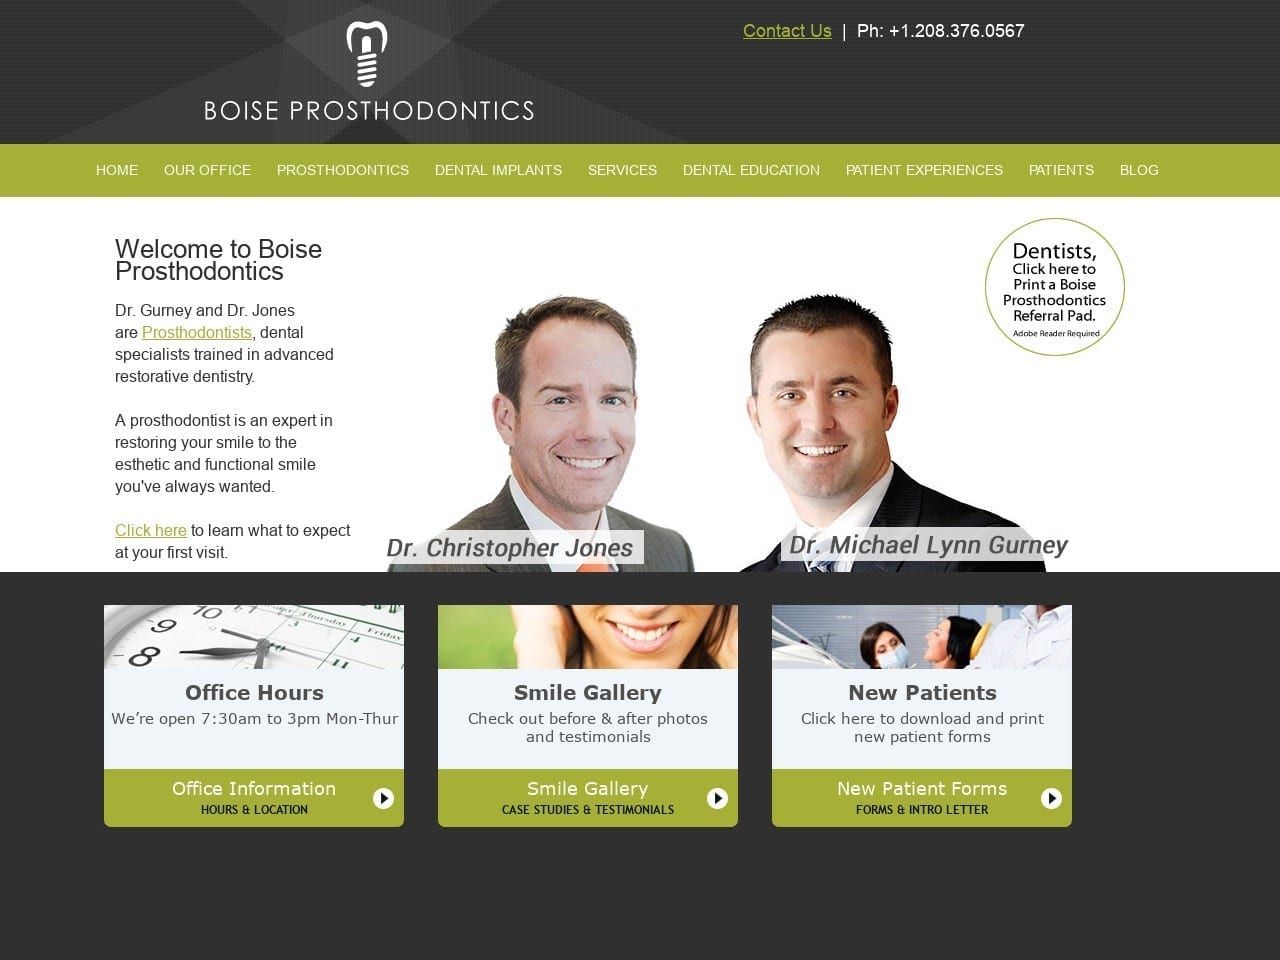 Boise Prosthodontics Website Screenshot from boiseprosthodontics.com